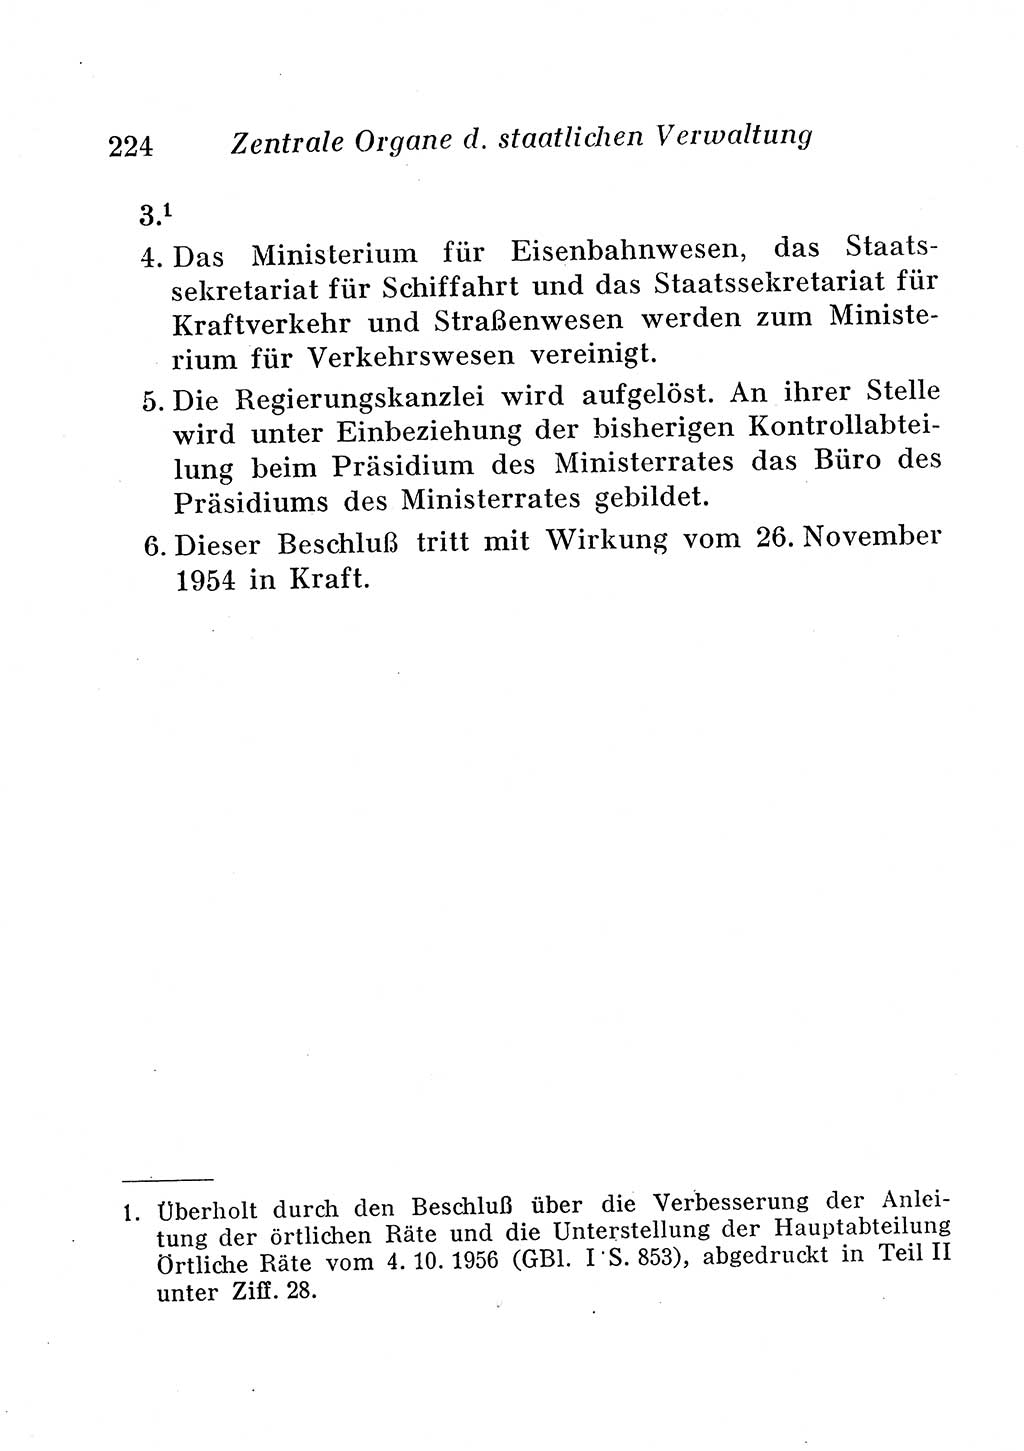 Staats- und verwaltungsrechtliche Gesetze der Deutschen Demokratischen Republik (DDR) 1958, Seite 224 (StVerwR Ges. DDR 1958, S. 224)